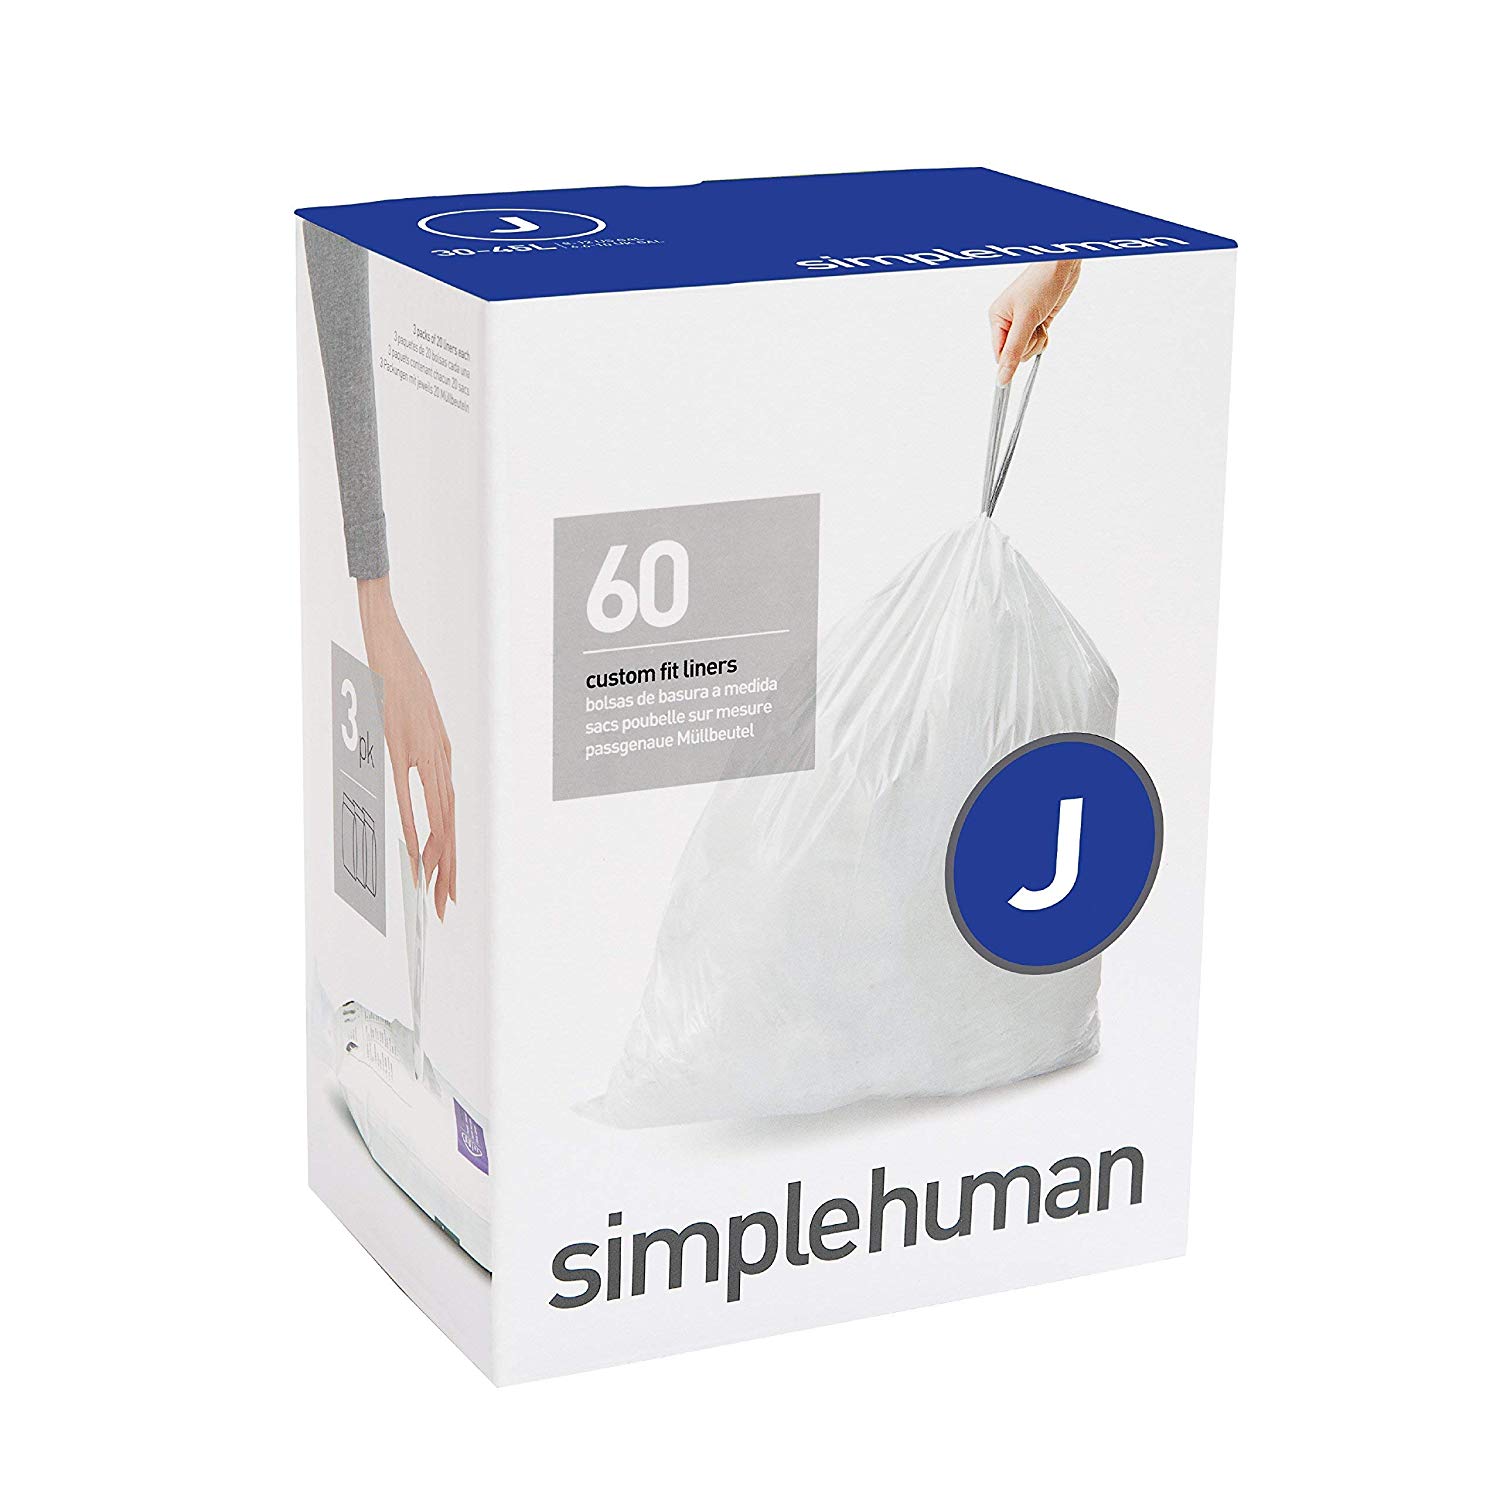 מארז 60 שקיות אשפה לפח 30-45 ליטר (J) דגם Simplehuman - CW0259 - סימפליומן